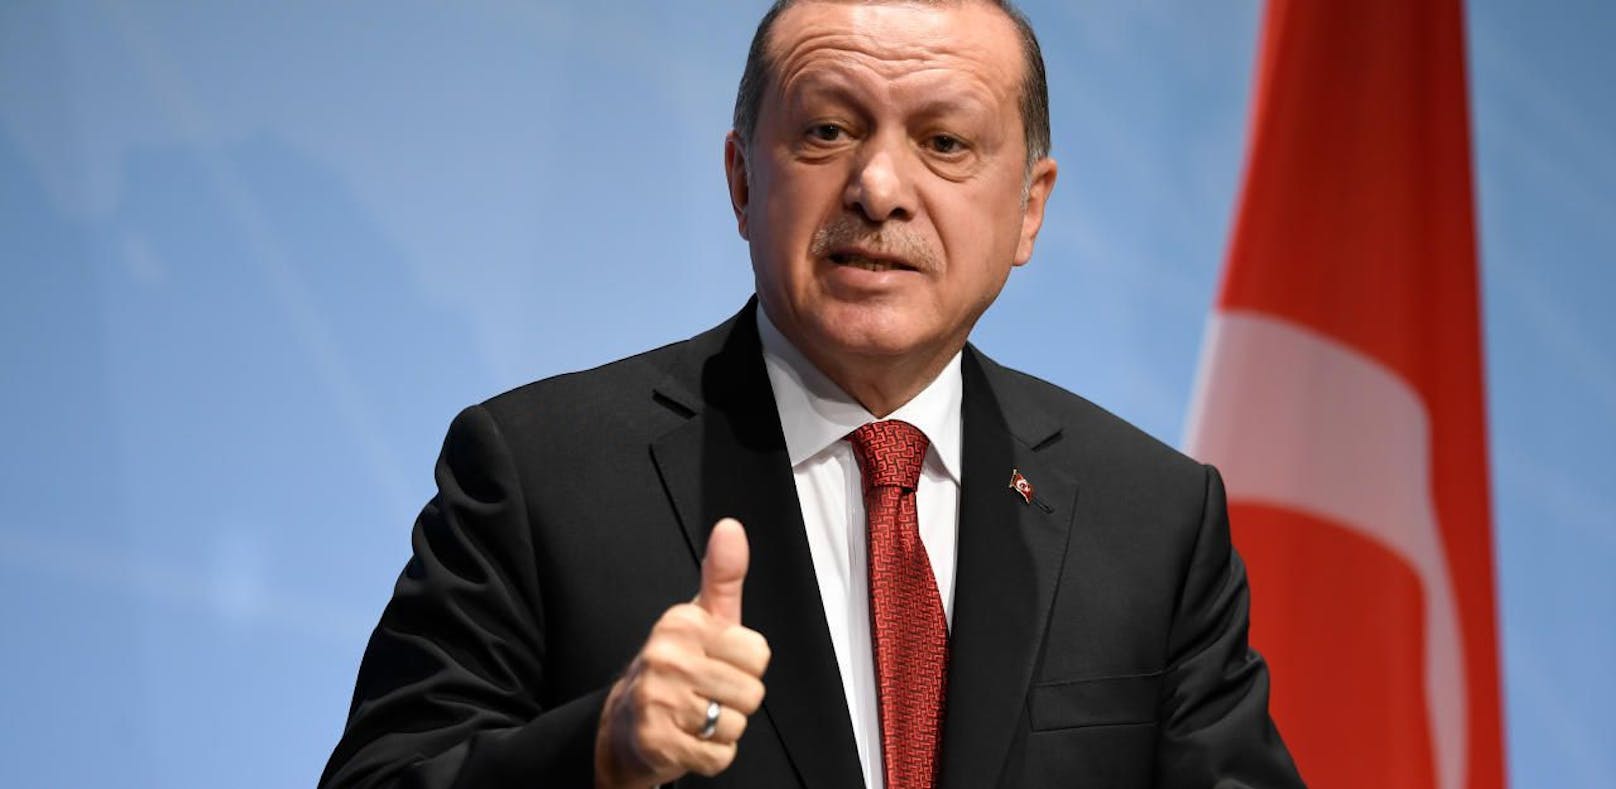 Türken-Präsident Recep Tayyip Erdogan bezeichnet die Kontrolle seiner Landsleute als &quot;Schande&quot;.